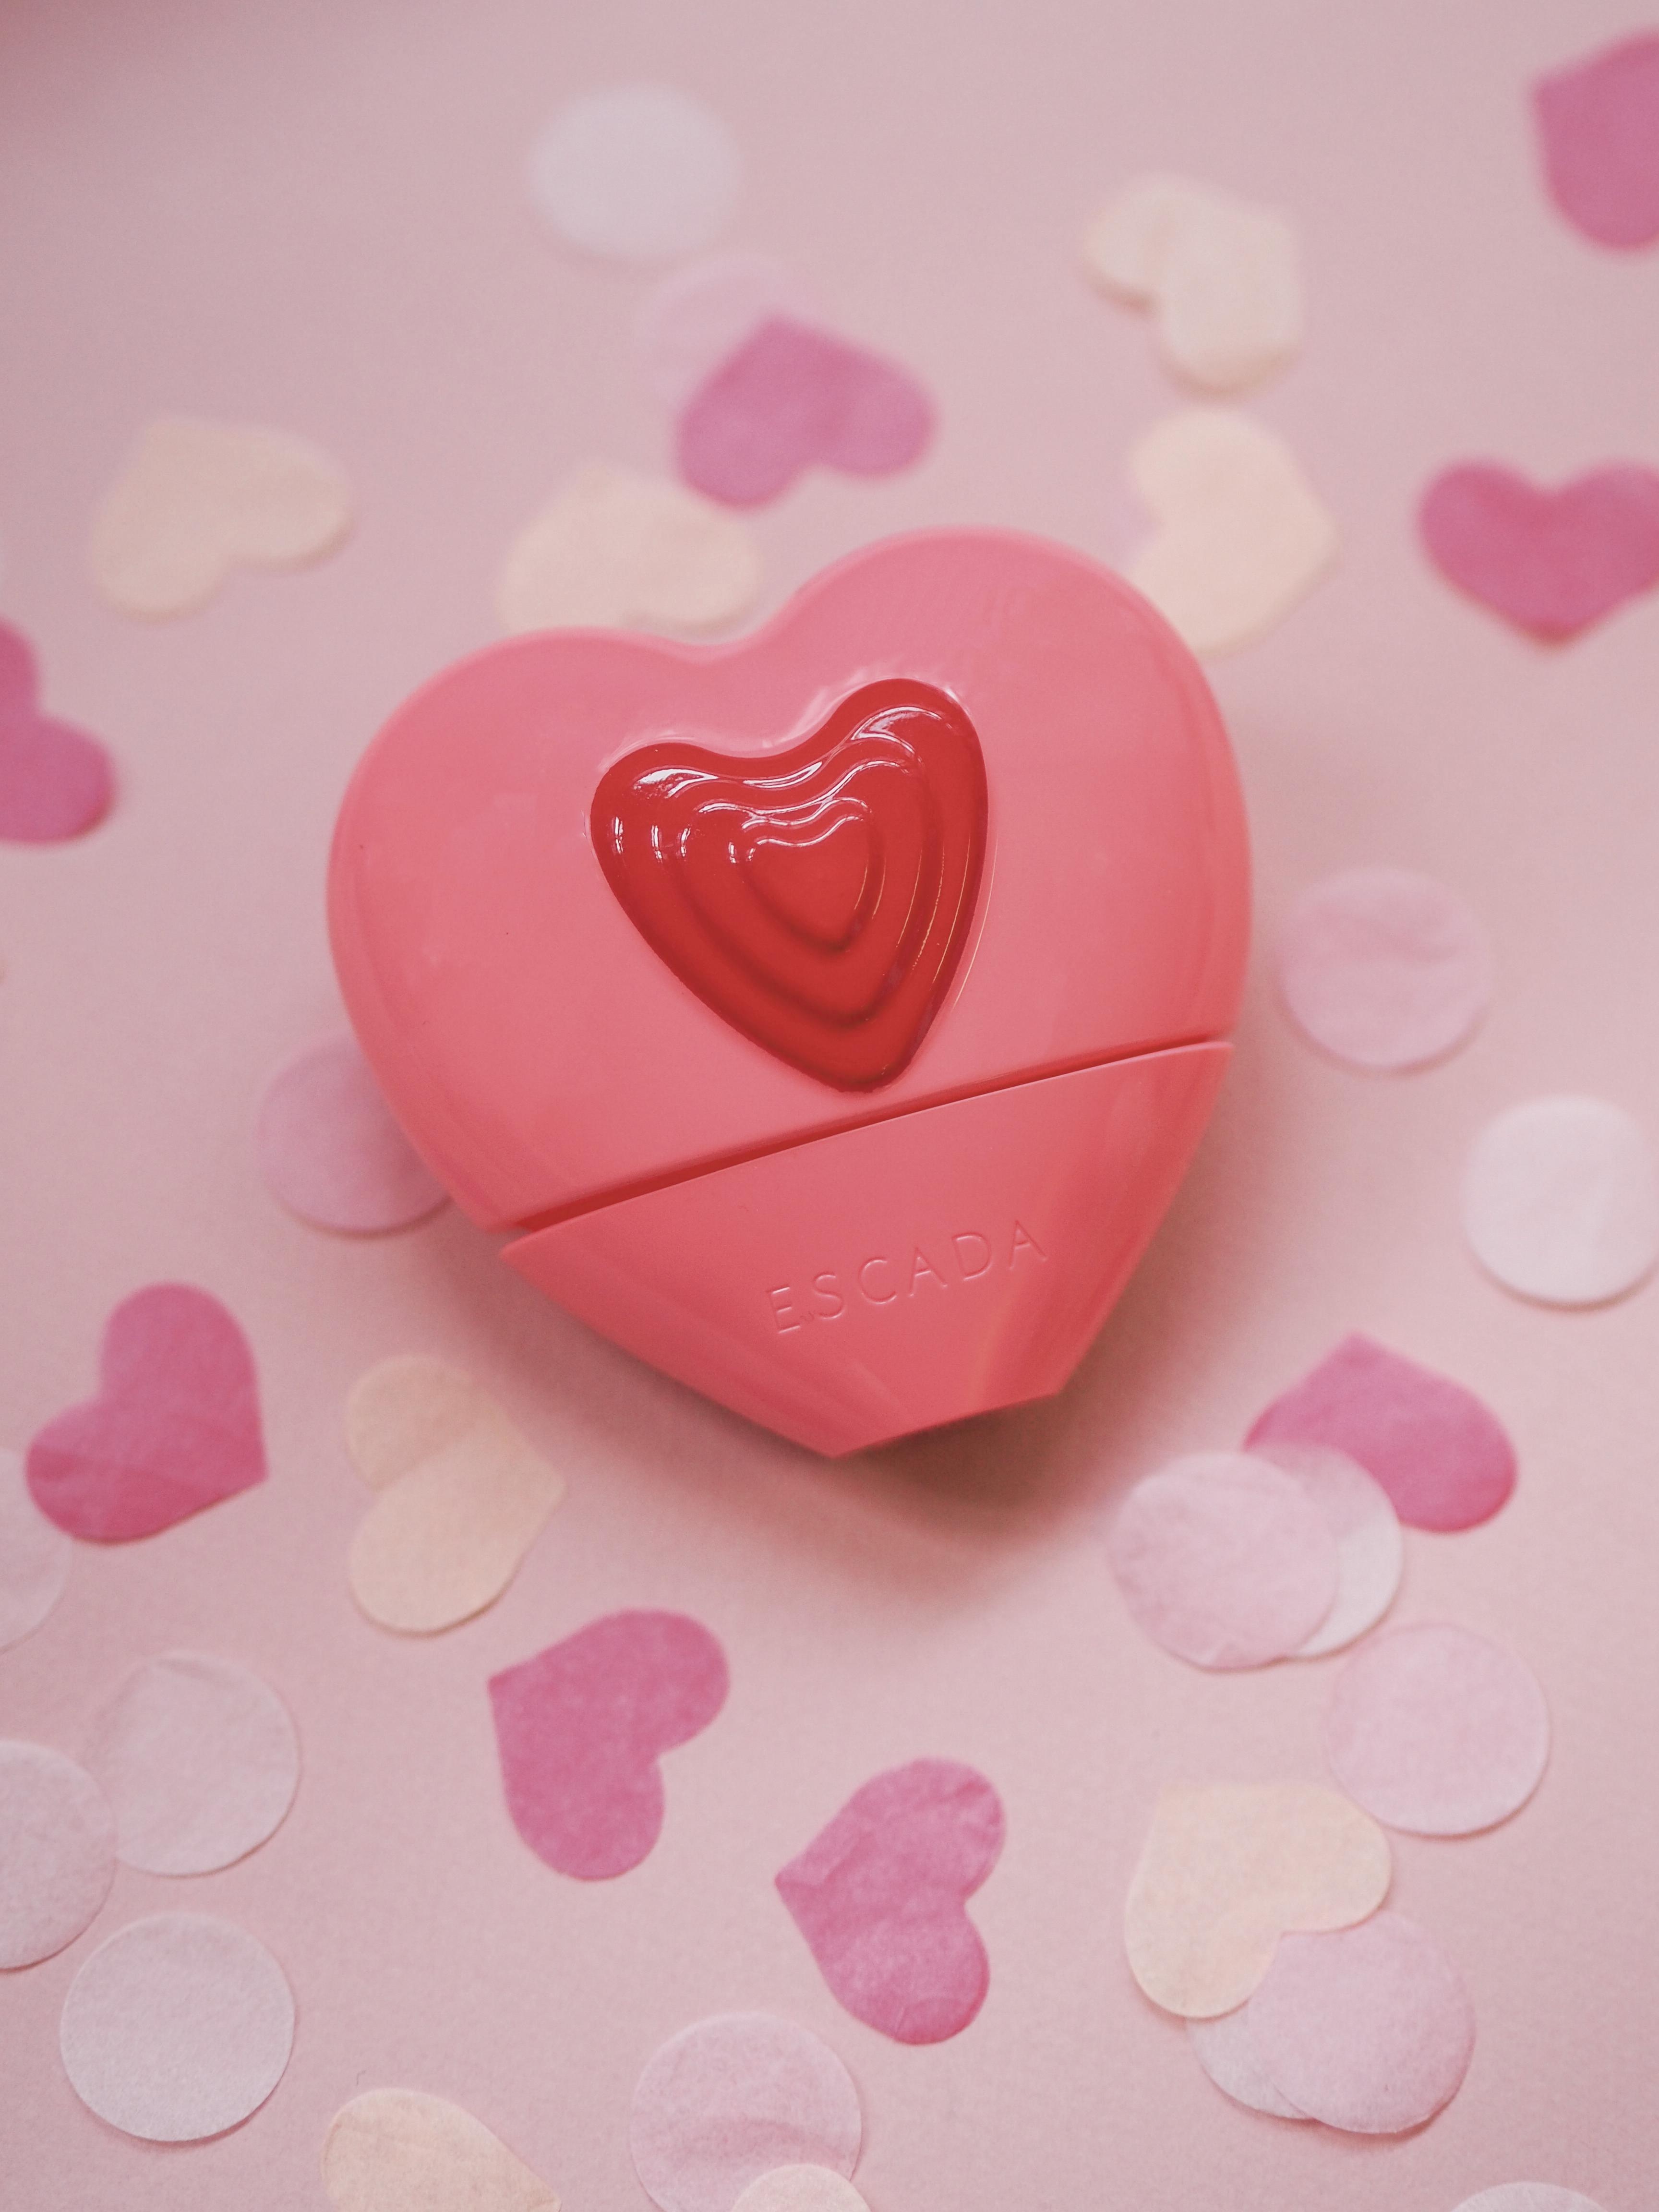 "Candy Love" von Escada verführt als süße Sünde die Sinne - ein blumiges Karussell #loveisintheair #escada